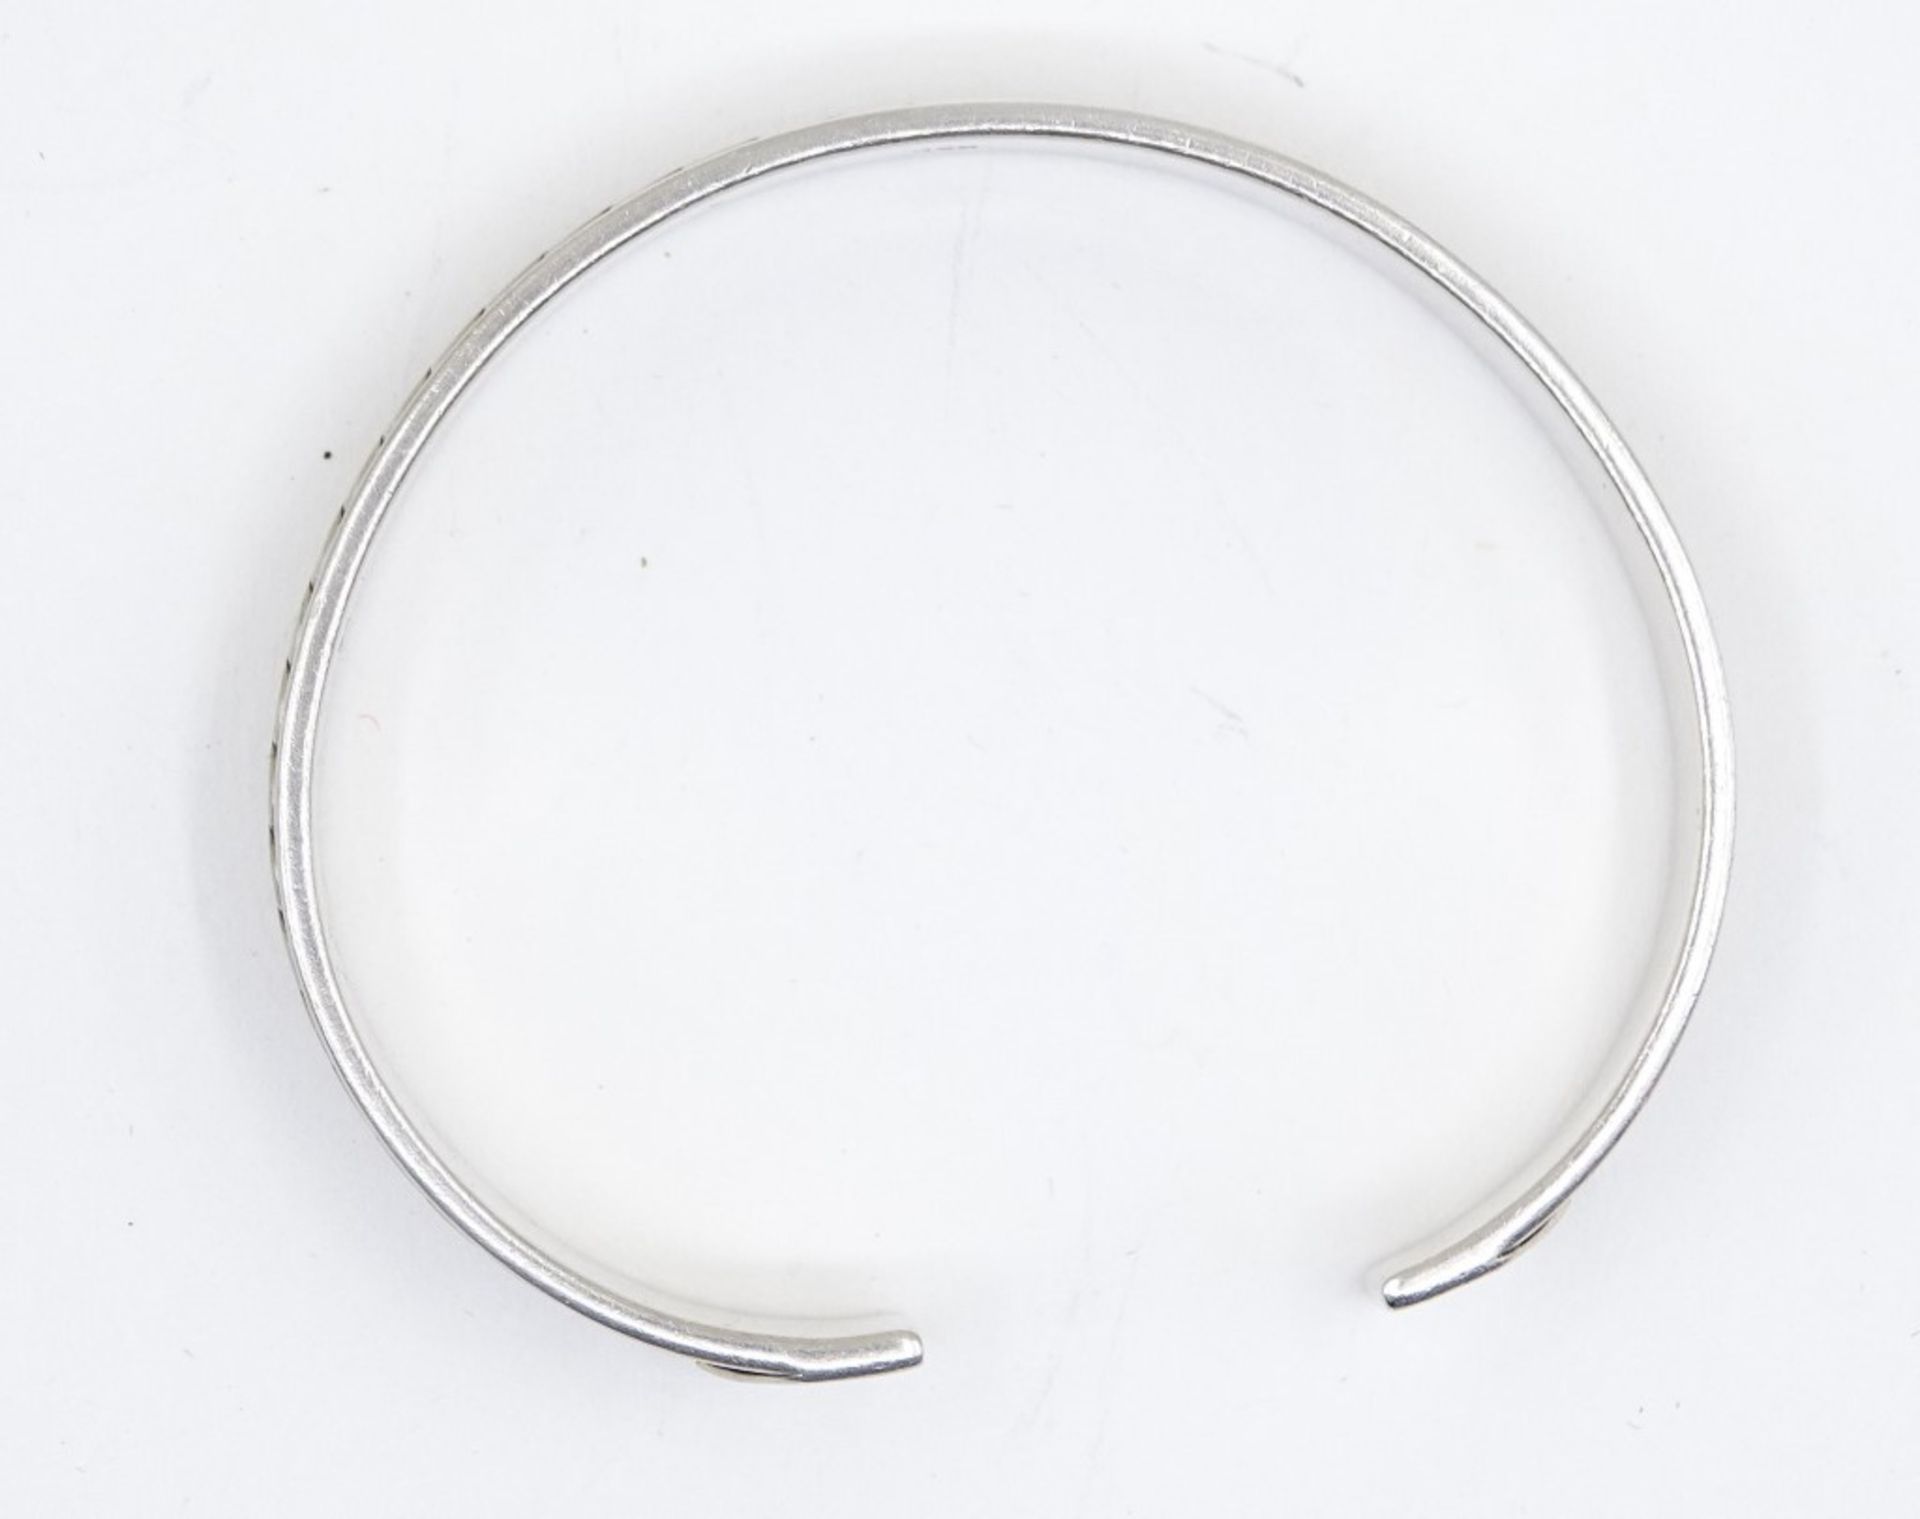 Armreif aus 925er-Silber, Ø 5,5 x 6,5 cm, B. 1 cm, 29 gr., leichte Alters- und Tragespuren - Bild 4 aus 4